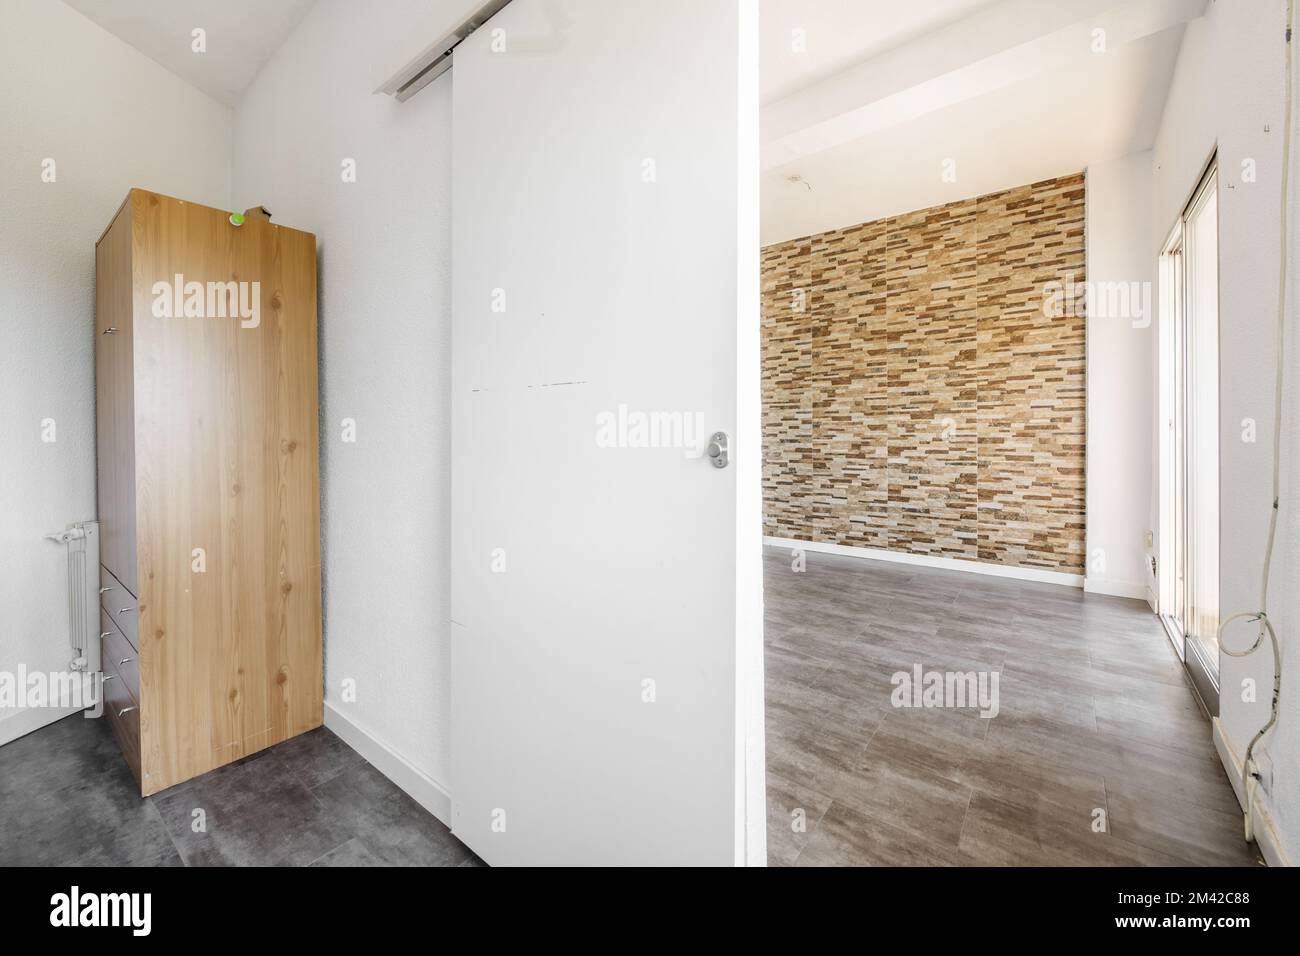 Ein leeres Zimmer mit einem Holzschrank in einer Ecke, eine weiße Holzschiebetür, die zu einem anderen Raum mit einer gefliesten Wand ähnlich wie Steinascher führt. Stockfoto